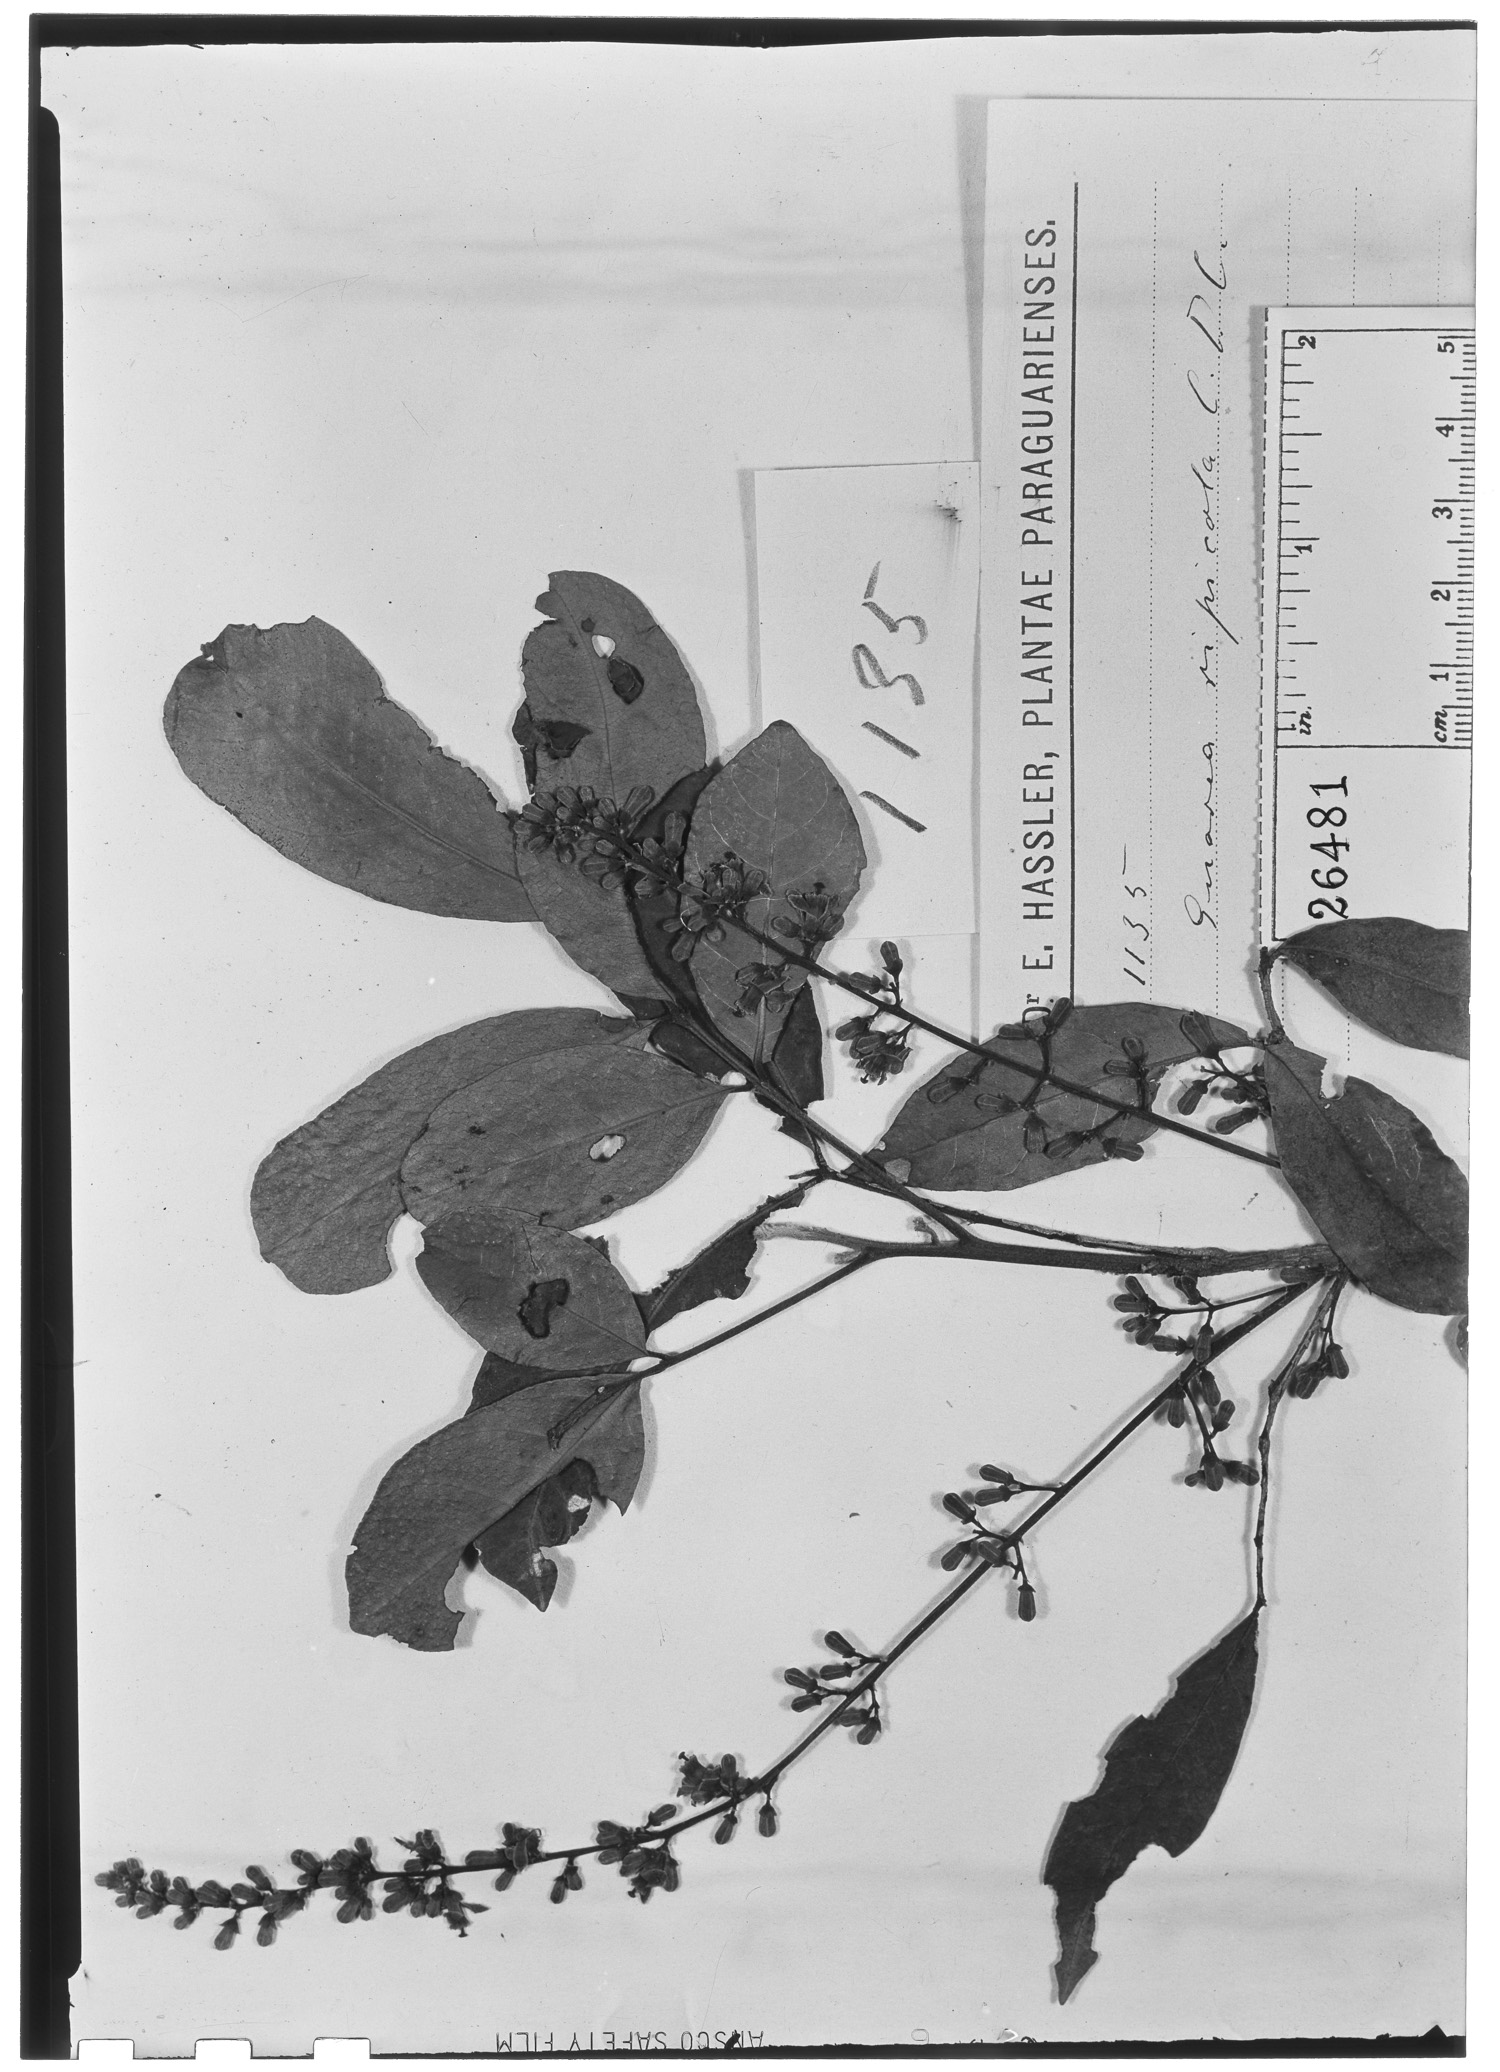 Guarea macrophylla subsp. spicaeflora image